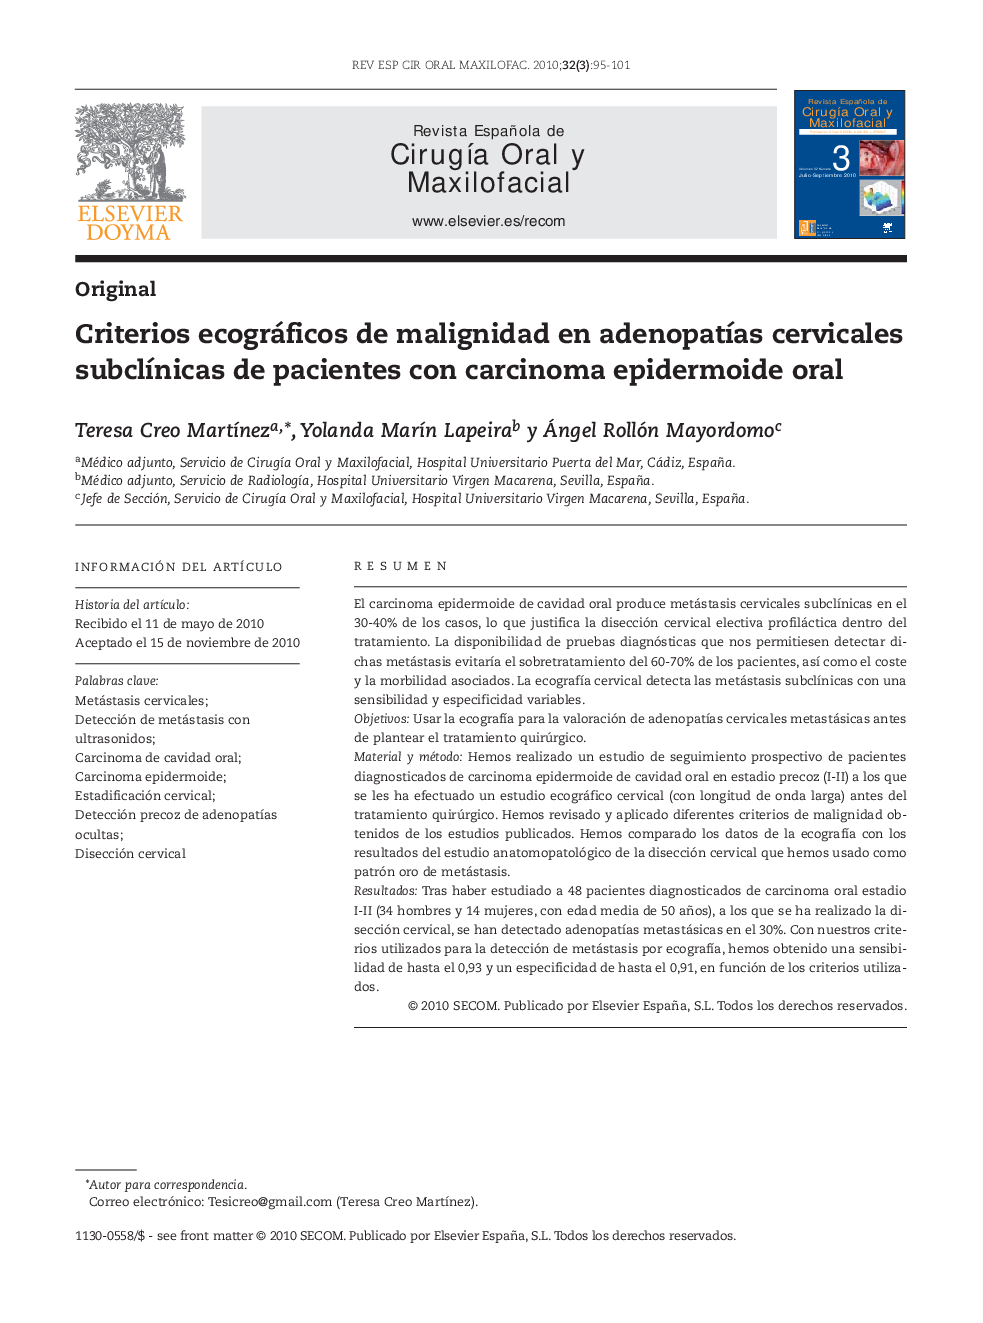 Criterios ecográficos de malignidad en adenopatías cervicales subclínicas de pacientes con carcinoma epidermoide oral